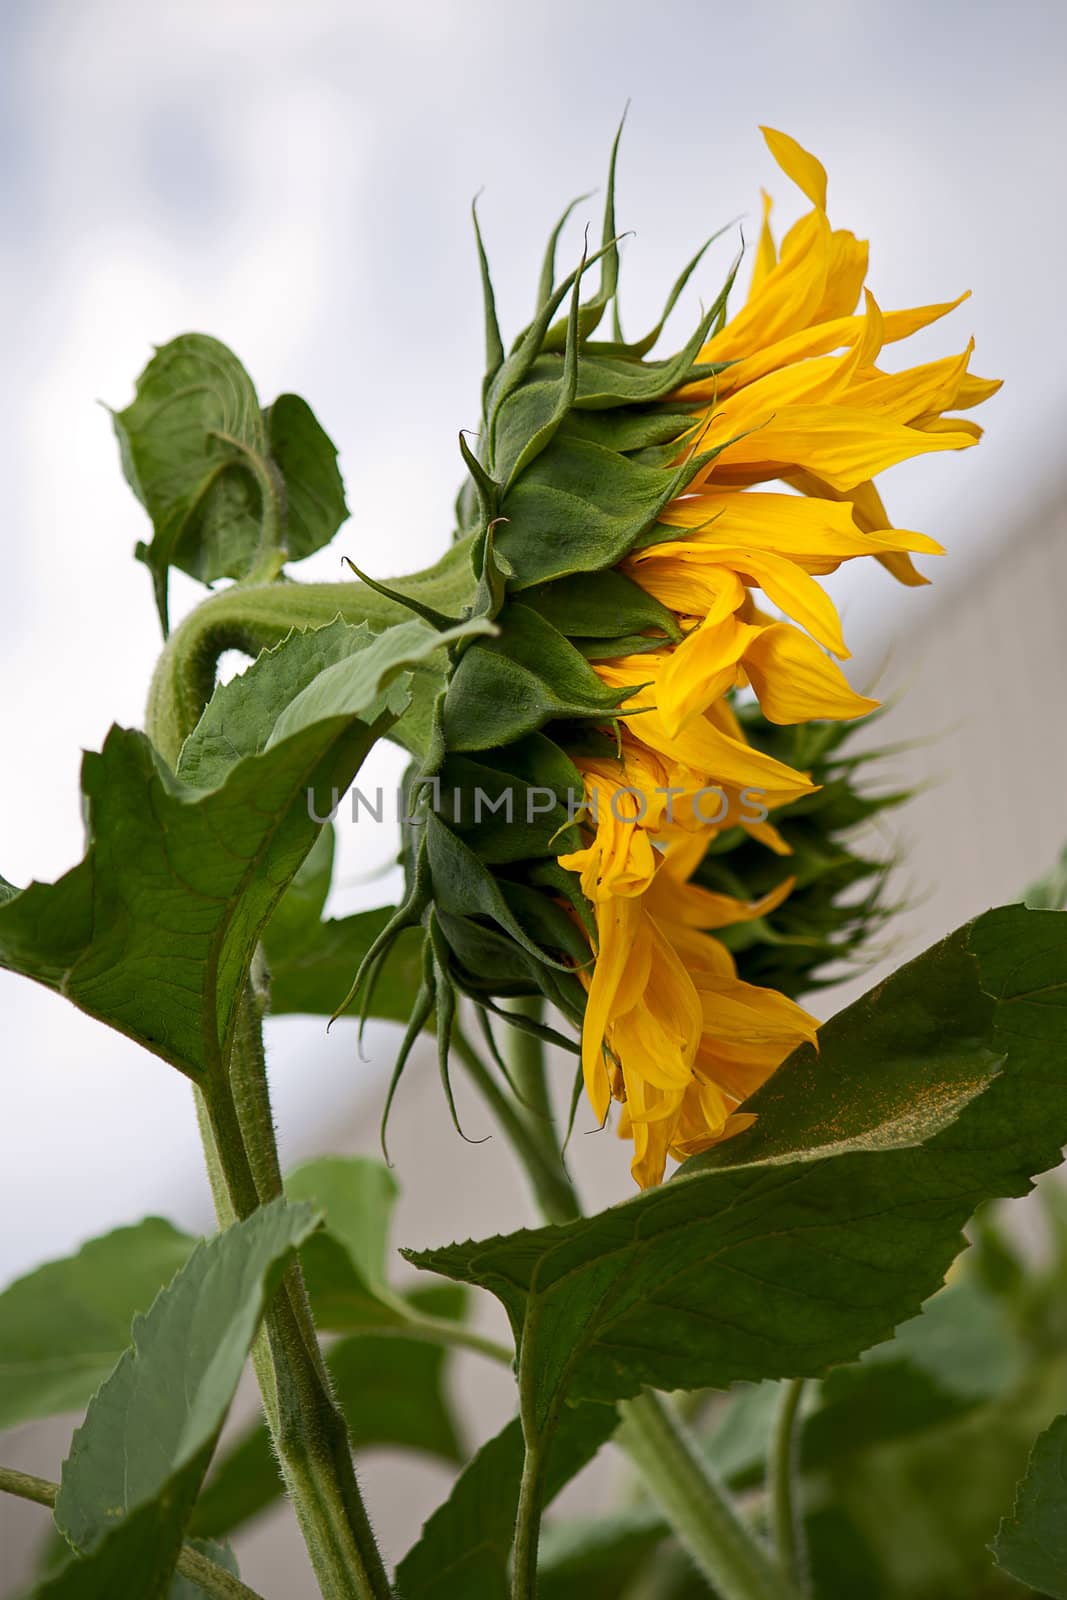 Sunflower by zhannaprokopeva